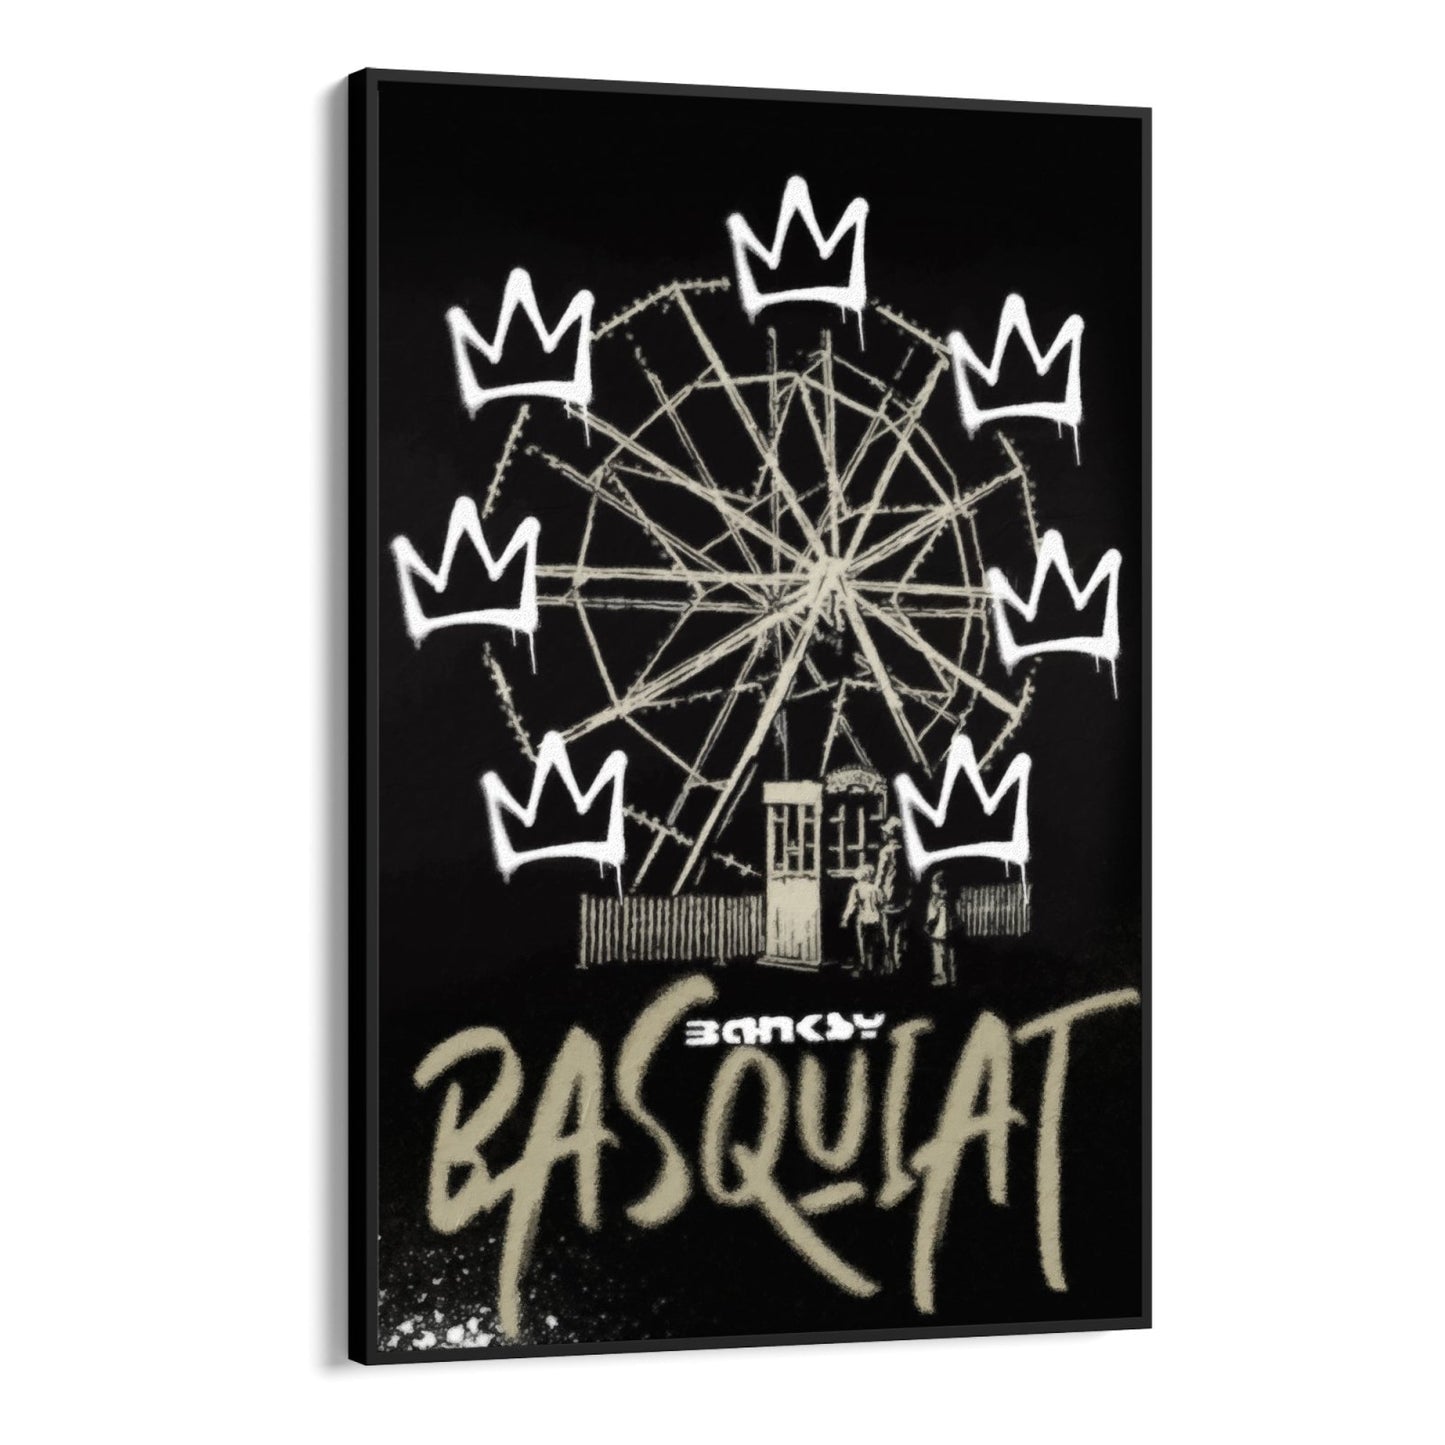 Graffiti Banksy’ego Basquiata